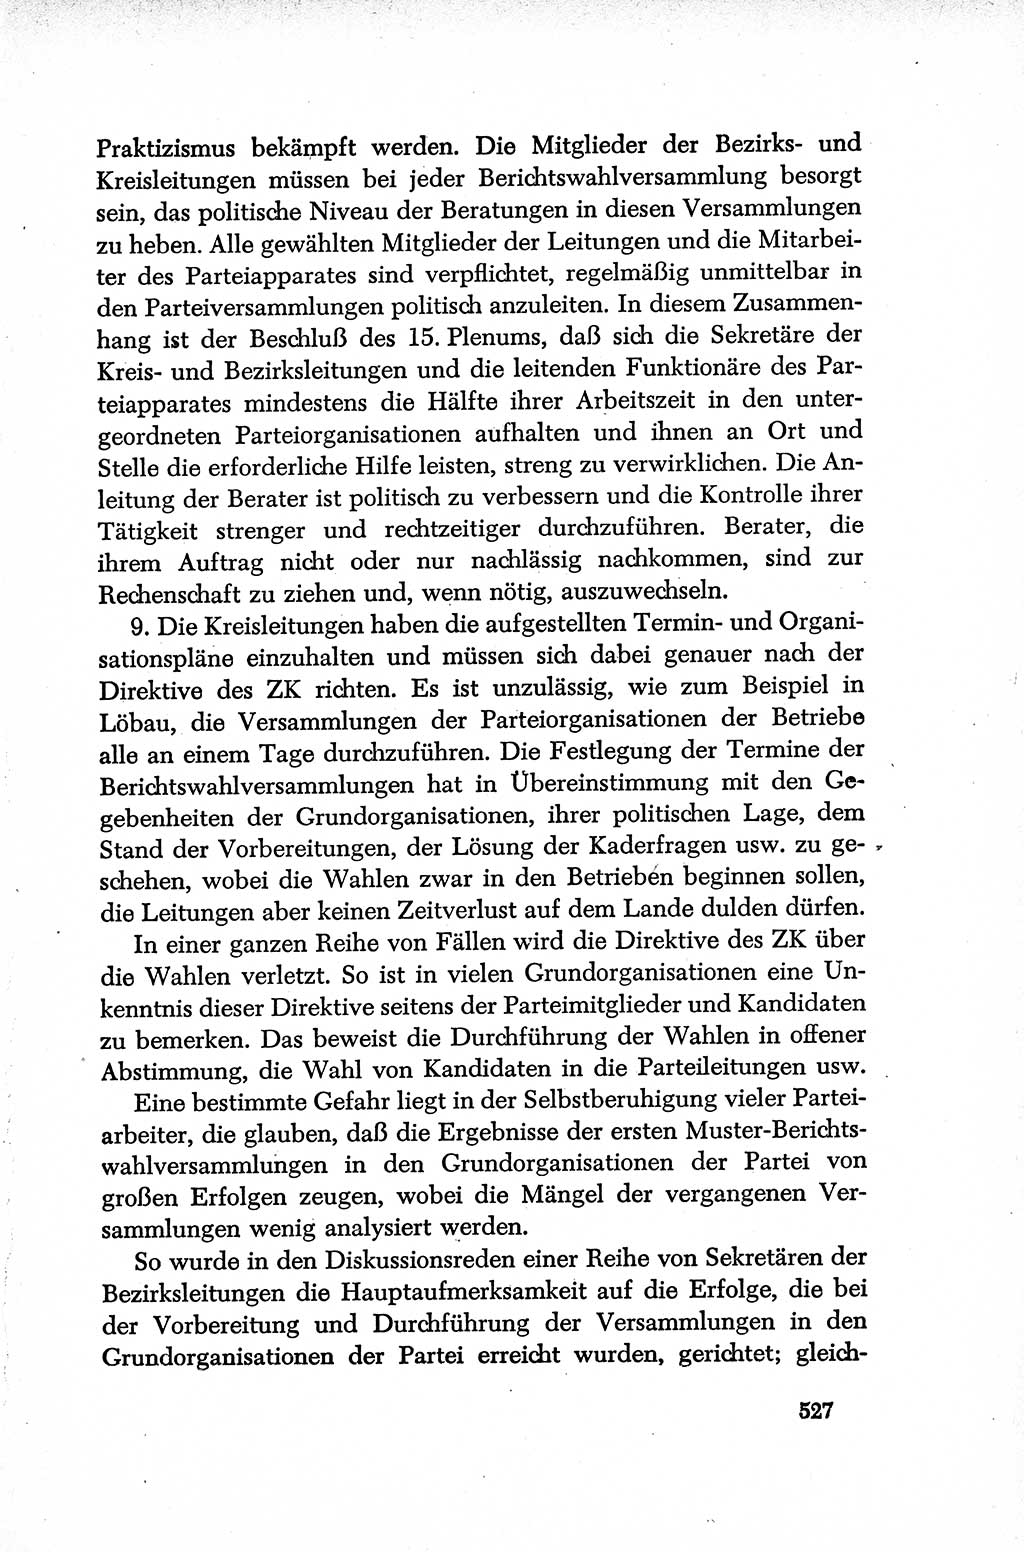 Dokumente der Sozialistischen Einheitspartei Deutschlands (SED) [Deutsche Demokratische Republik (DDR)] 1952-1953, Seite 527 (Dok. SED DDR 1952-1953, S. 527)